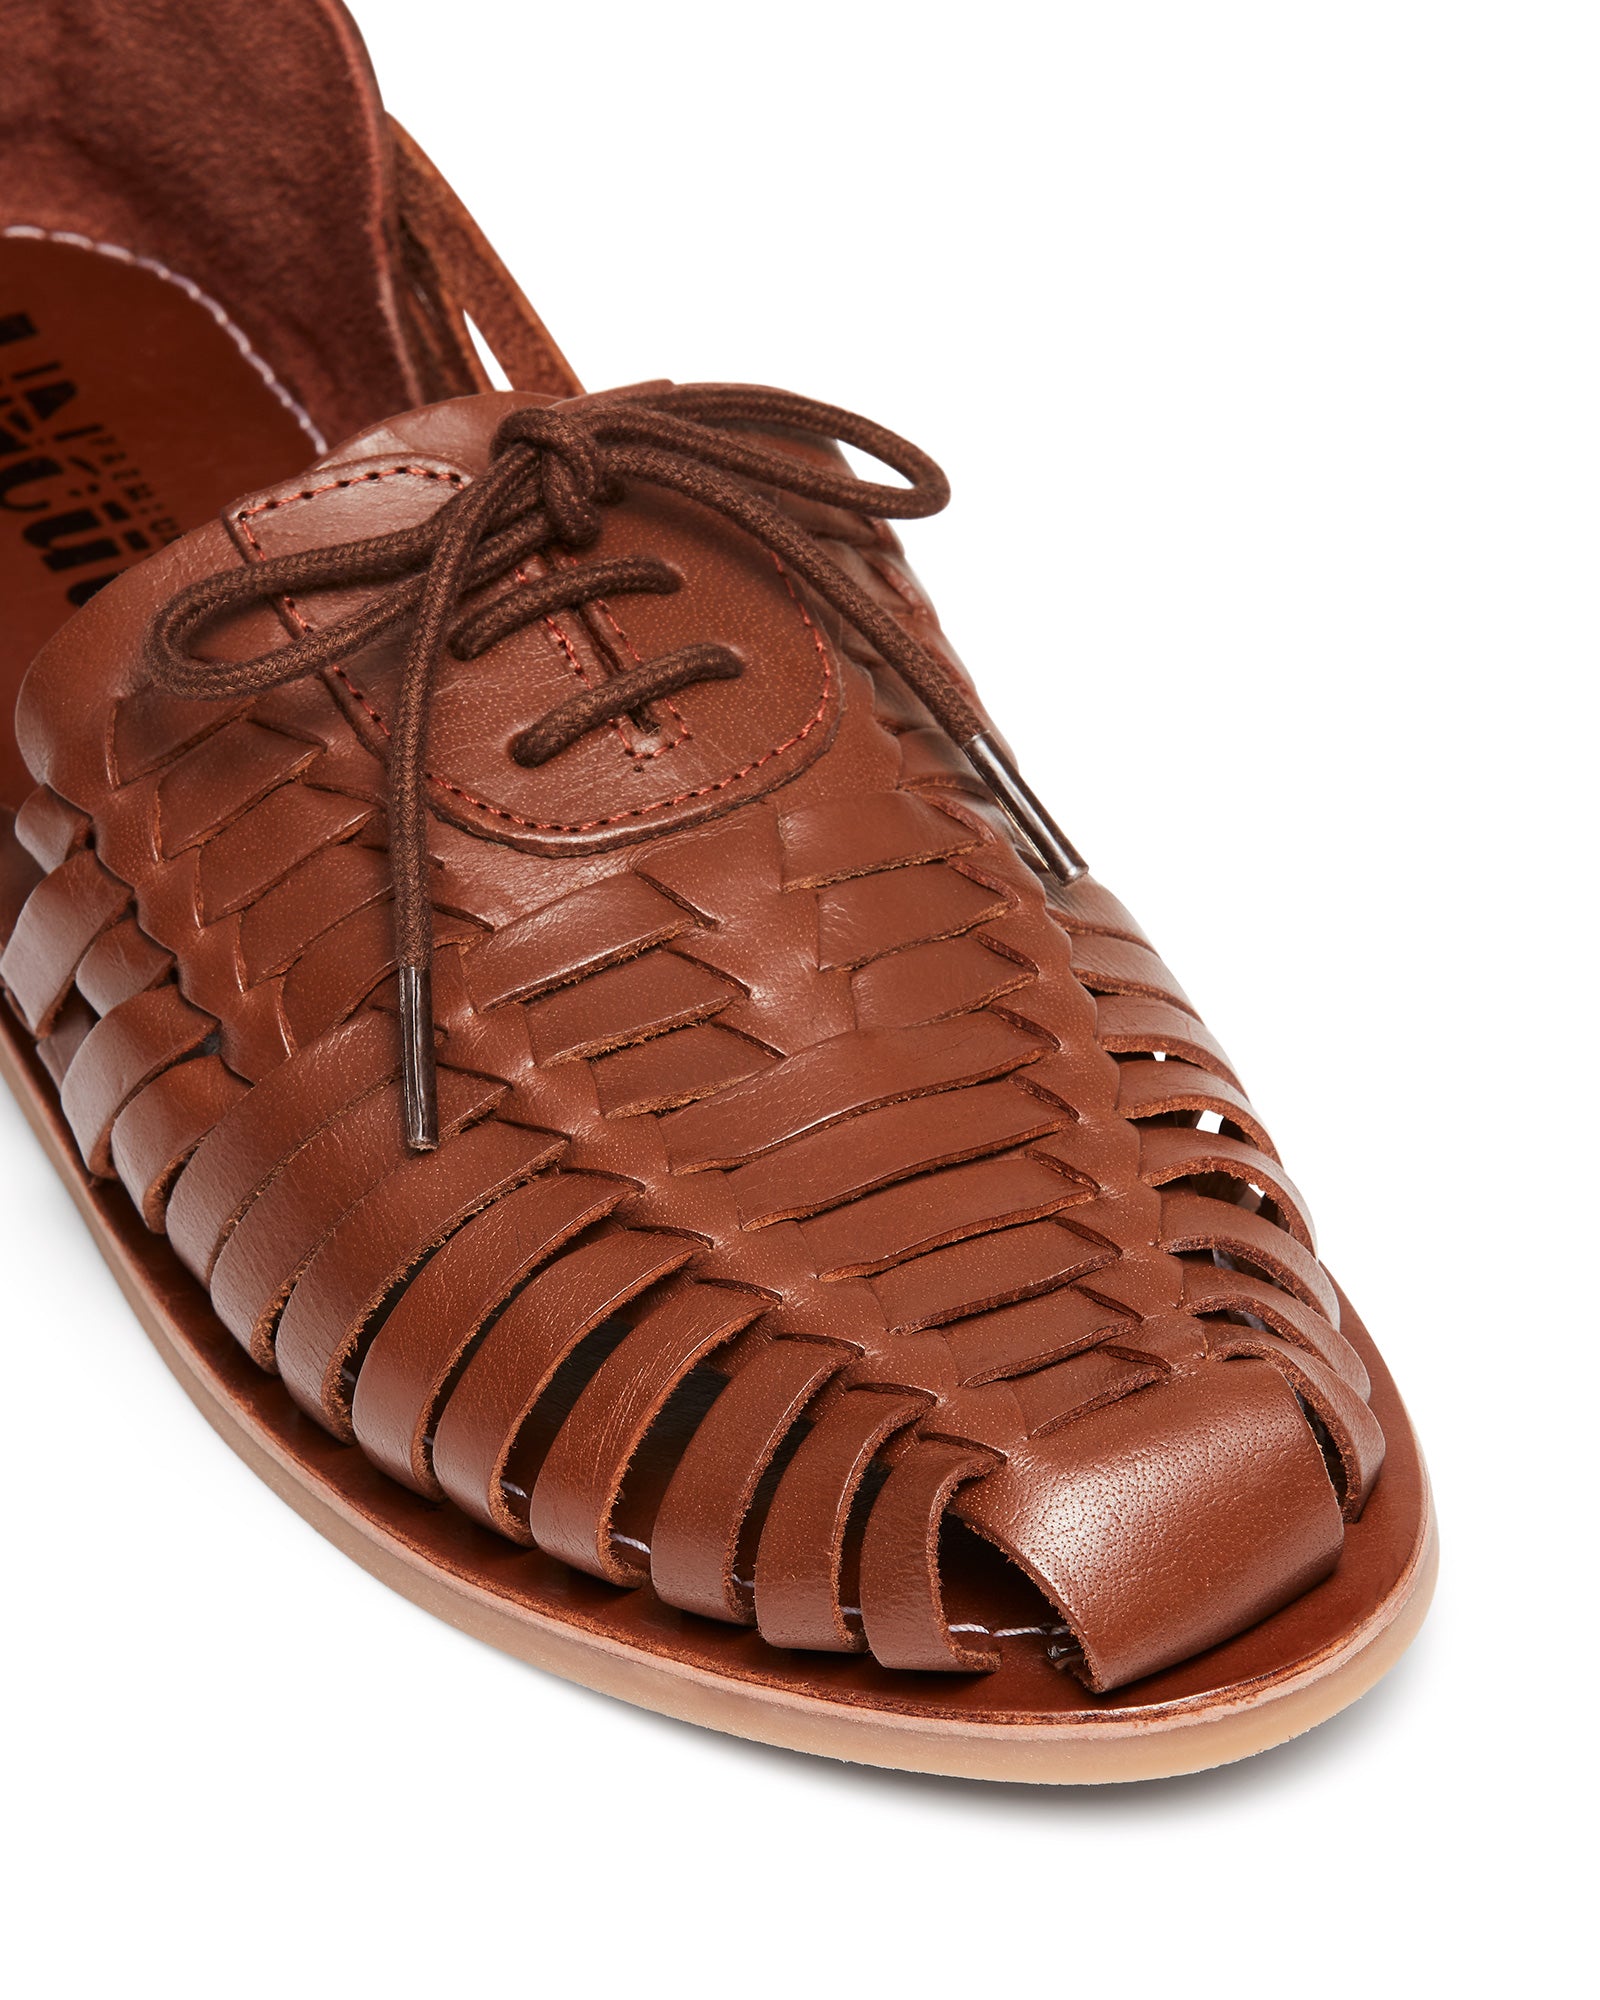 Uncut Shoes Sidari 2 | Men's Leather Huarache | Woven Lace Up | Sandal